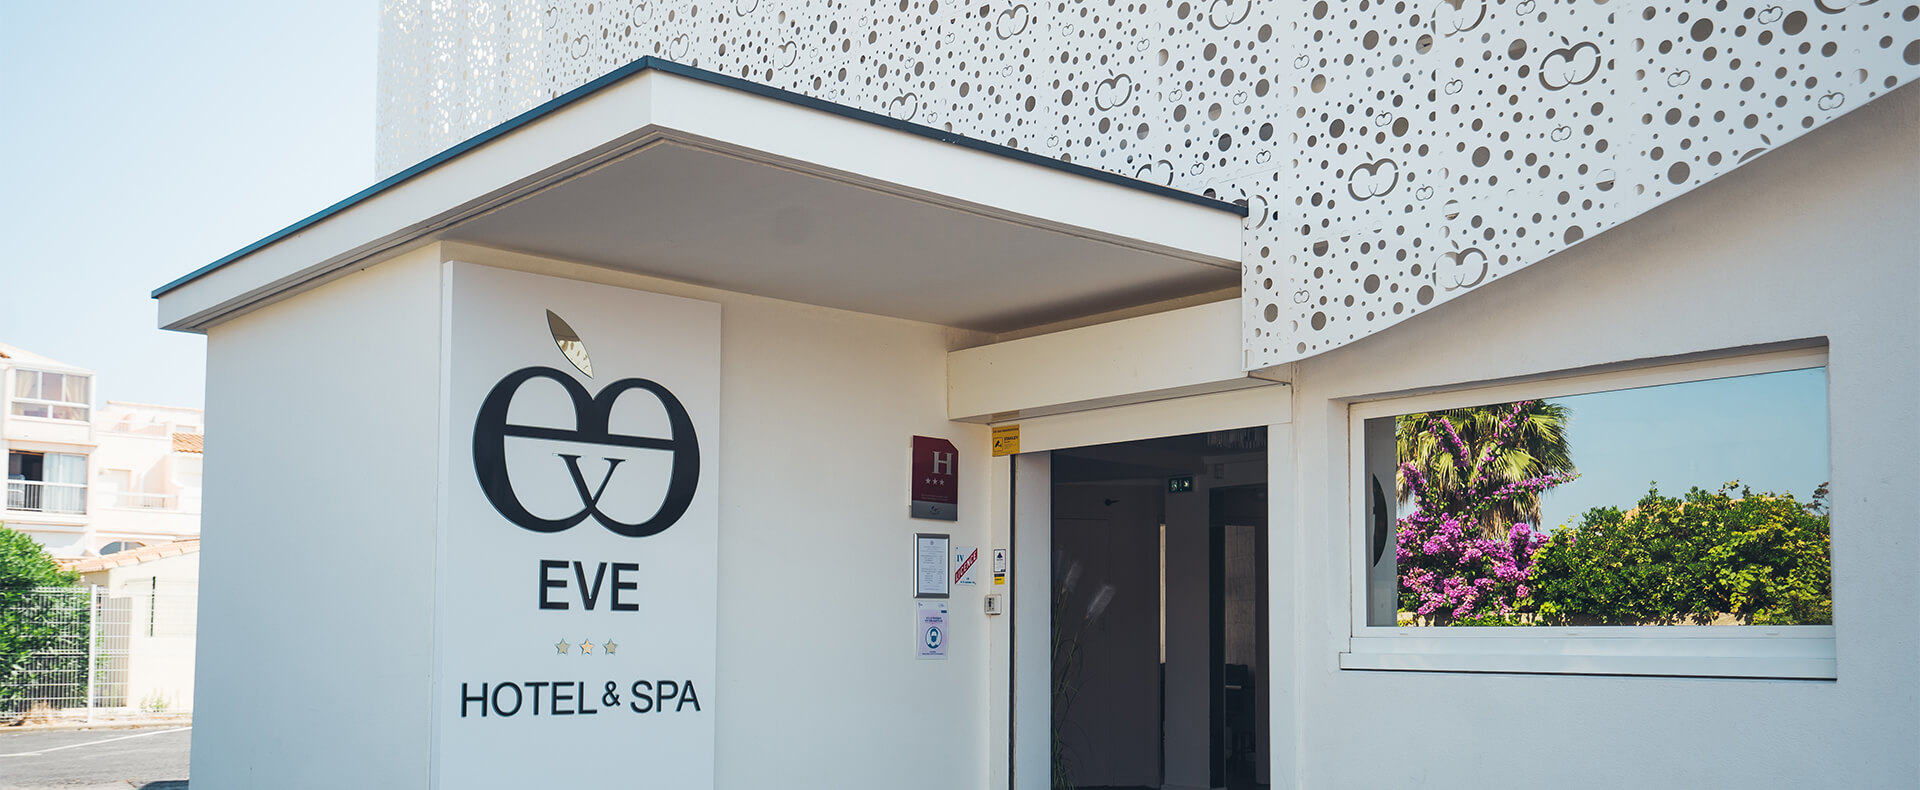 Hotel Eve, Naturist Hotel a Cap d'Agde